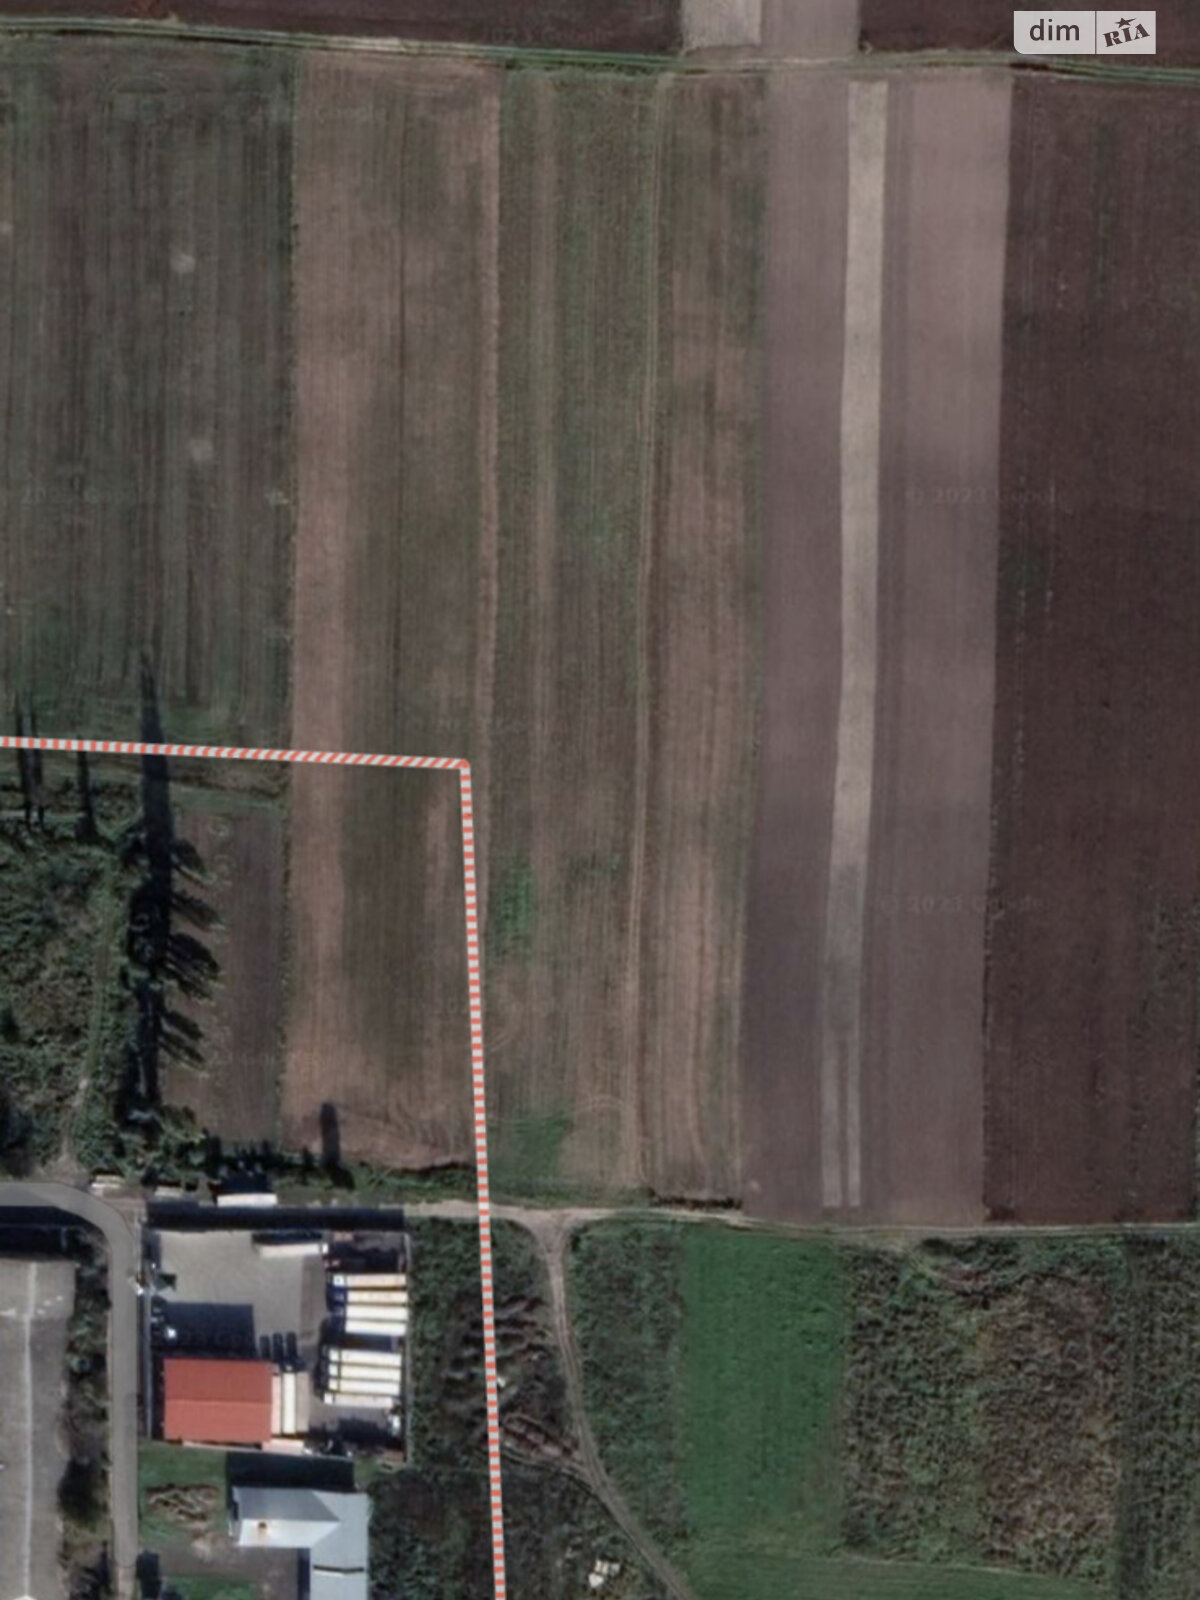 Земельный участок сельскохозяйственного назначения в Княгининке, площадь 35000 Га фото 1